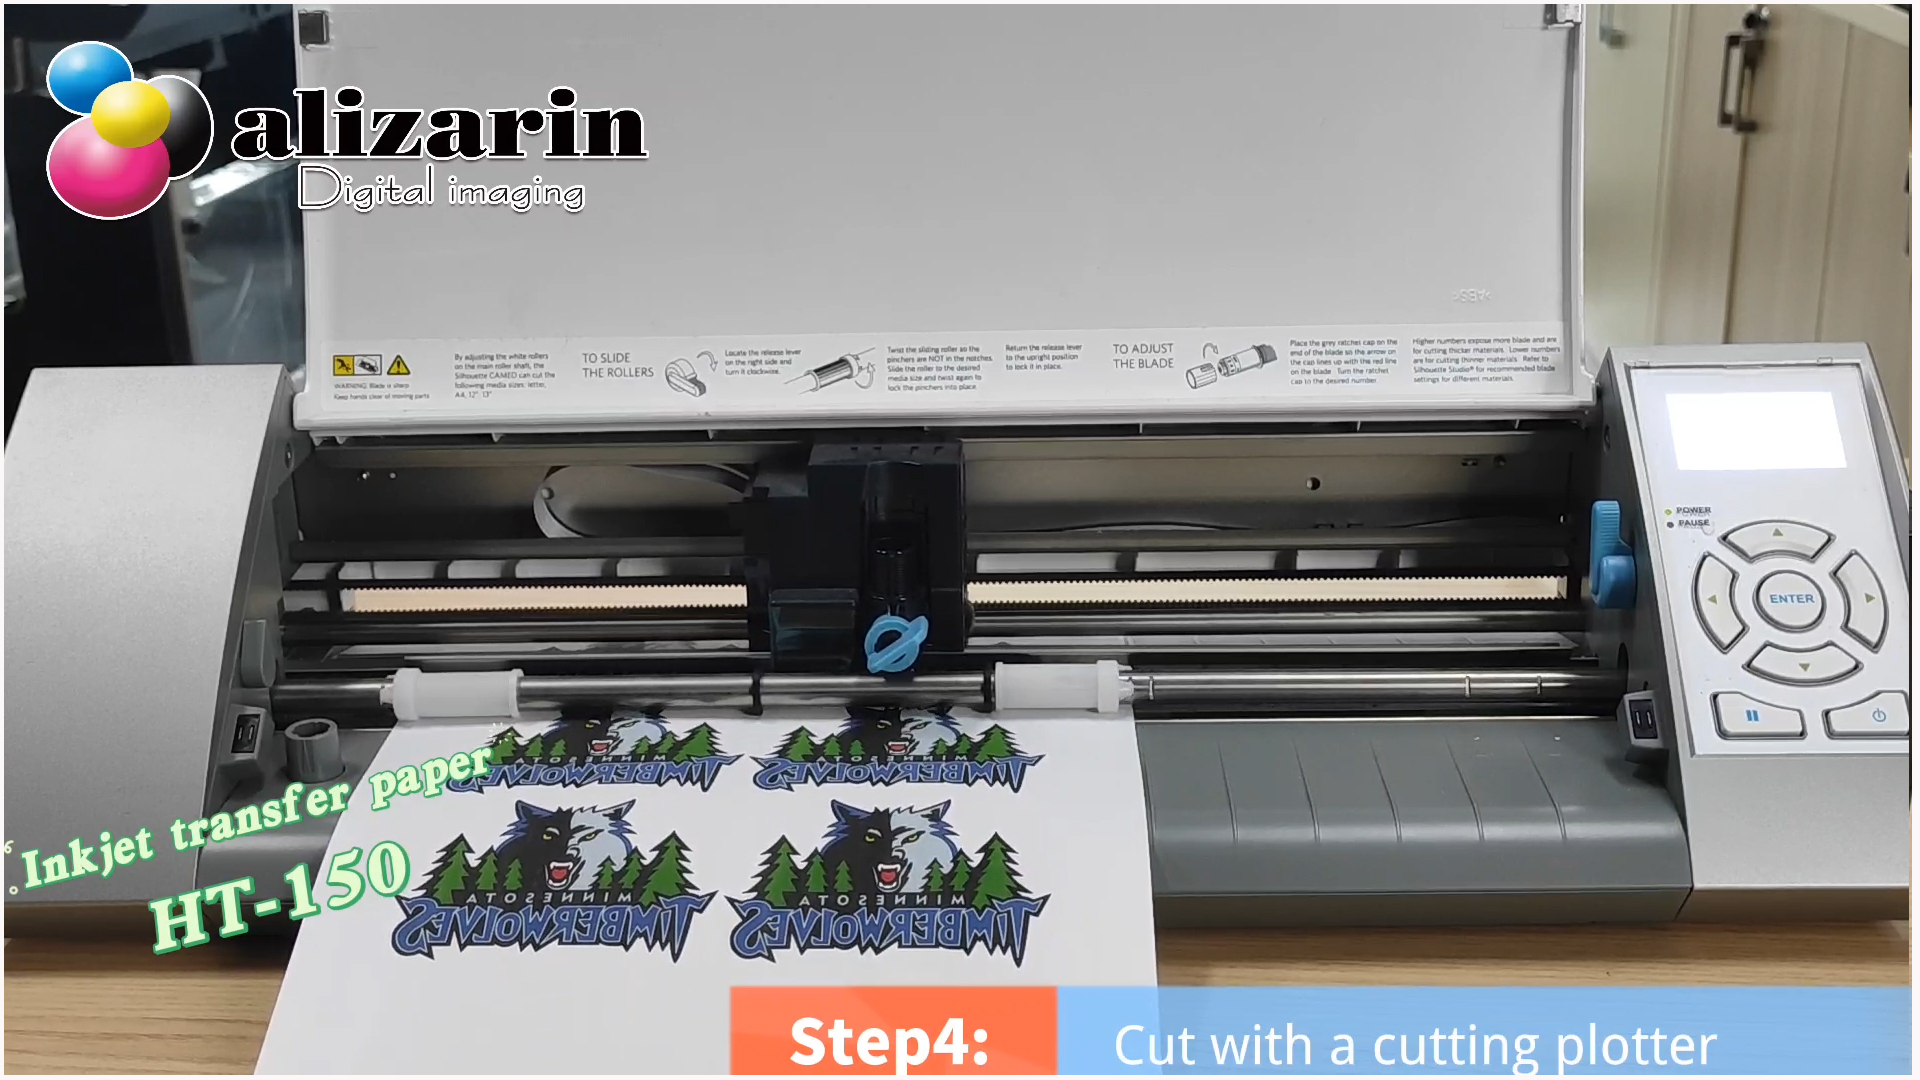 Легкий струйный фотоперенос Бумага HT-150 для печати и резки, перенесенная термопрессом, для футболок |АлизаринКитай.com